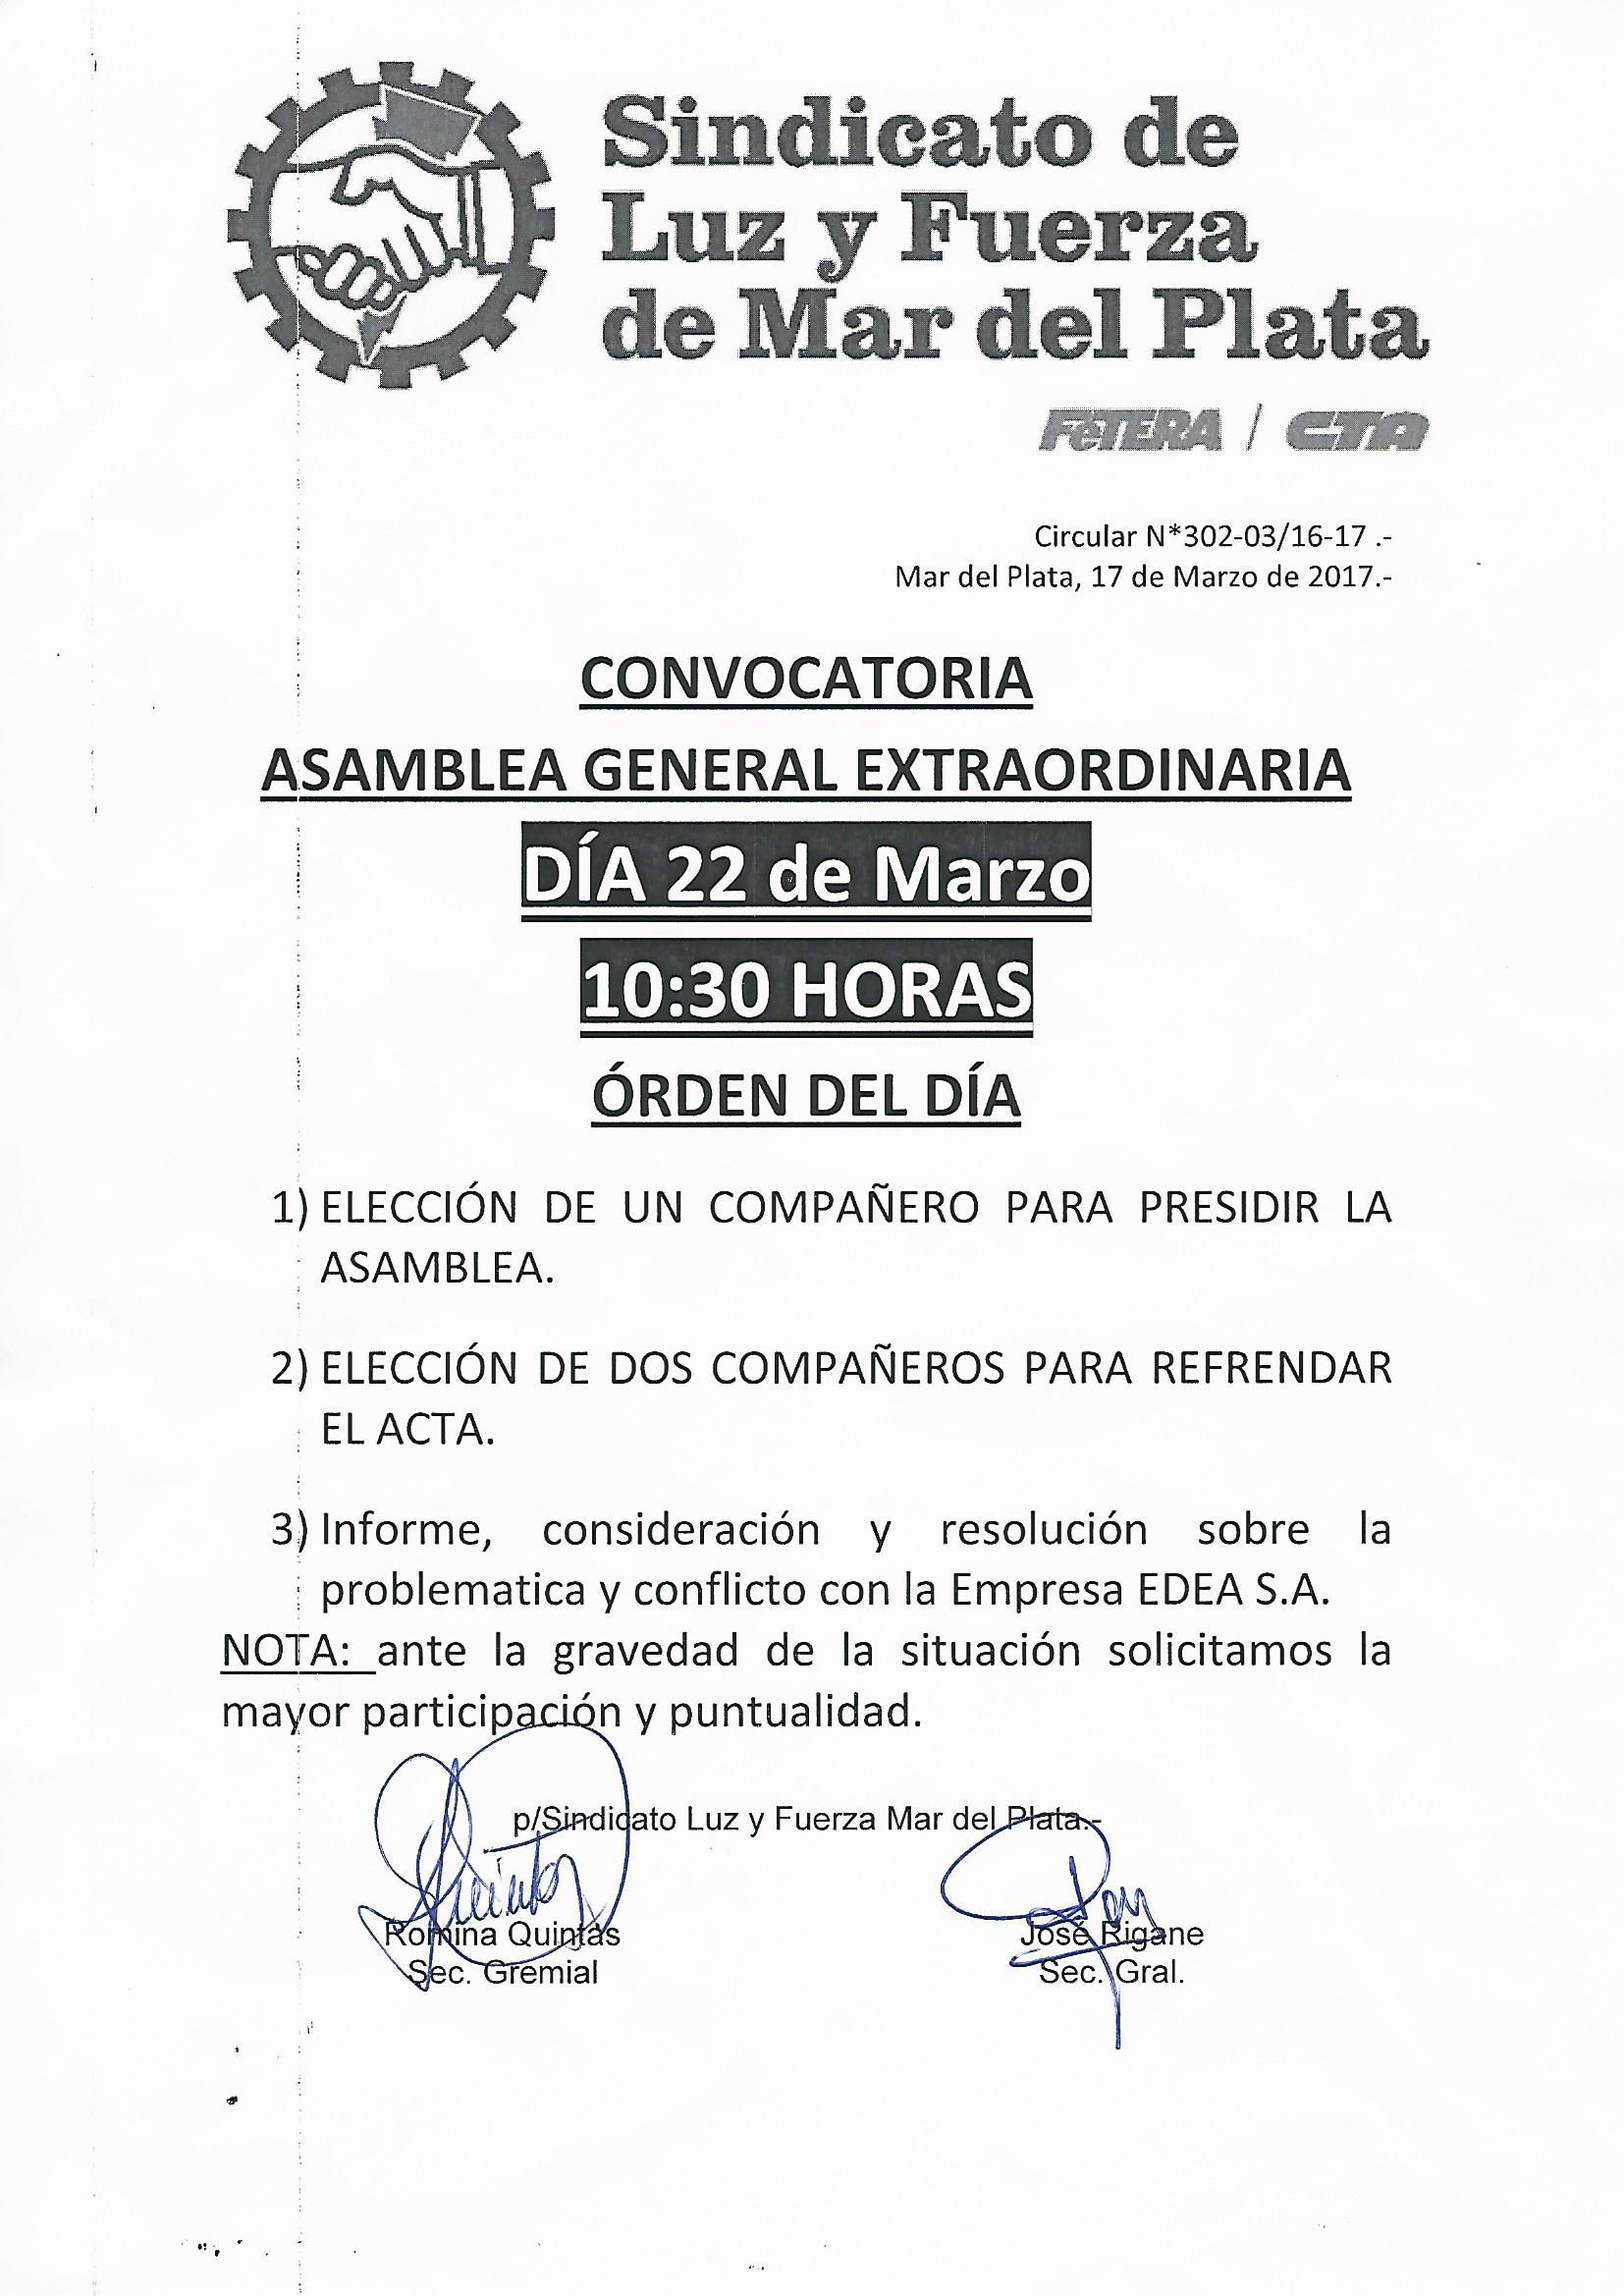 CONVOCATORIA ASAMBLEA GENERAL ORDINARIA 22-3-17 | Luz y Fuerza Mar del Plata